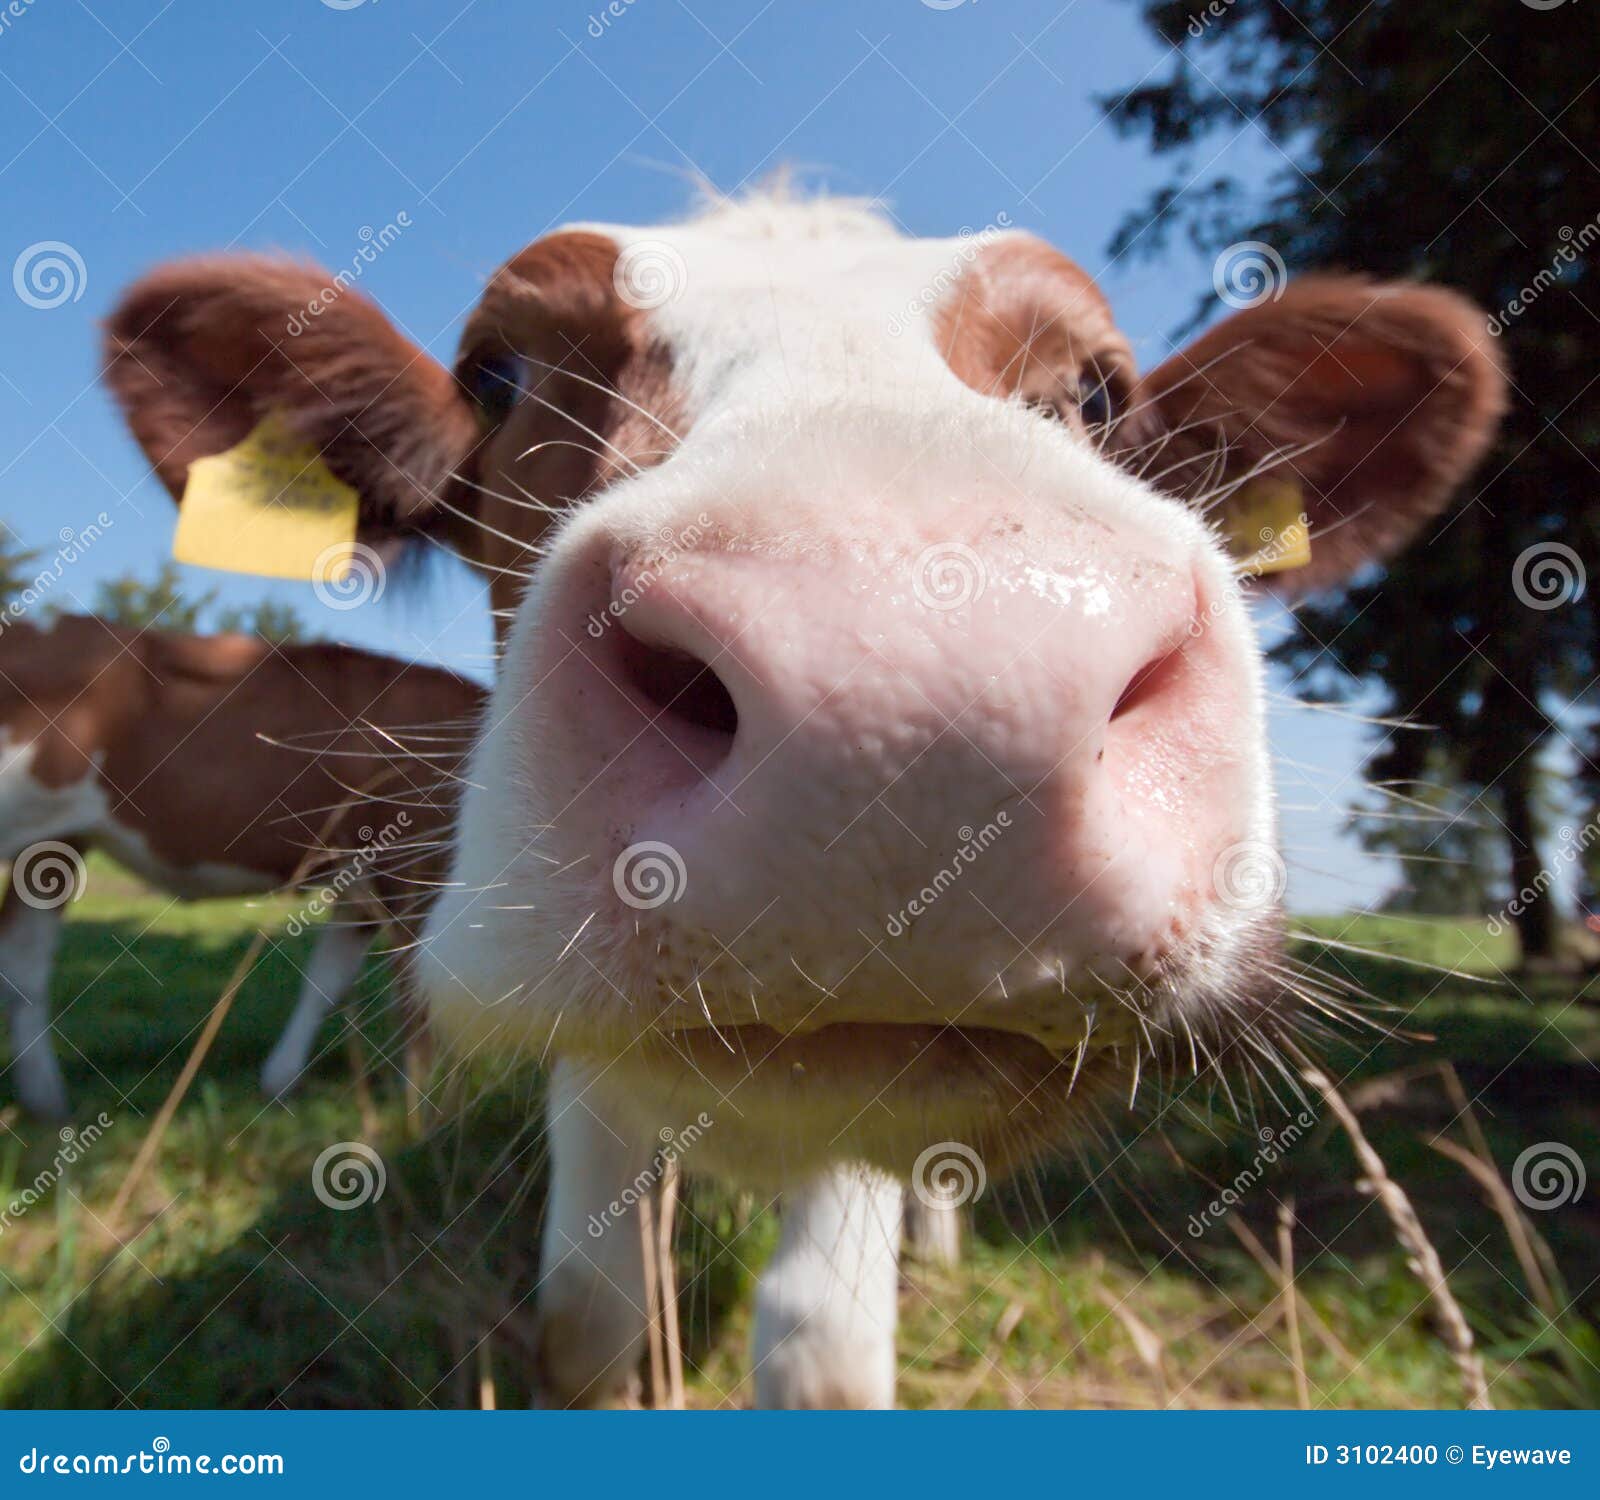 cow kisses clipart - photo #10